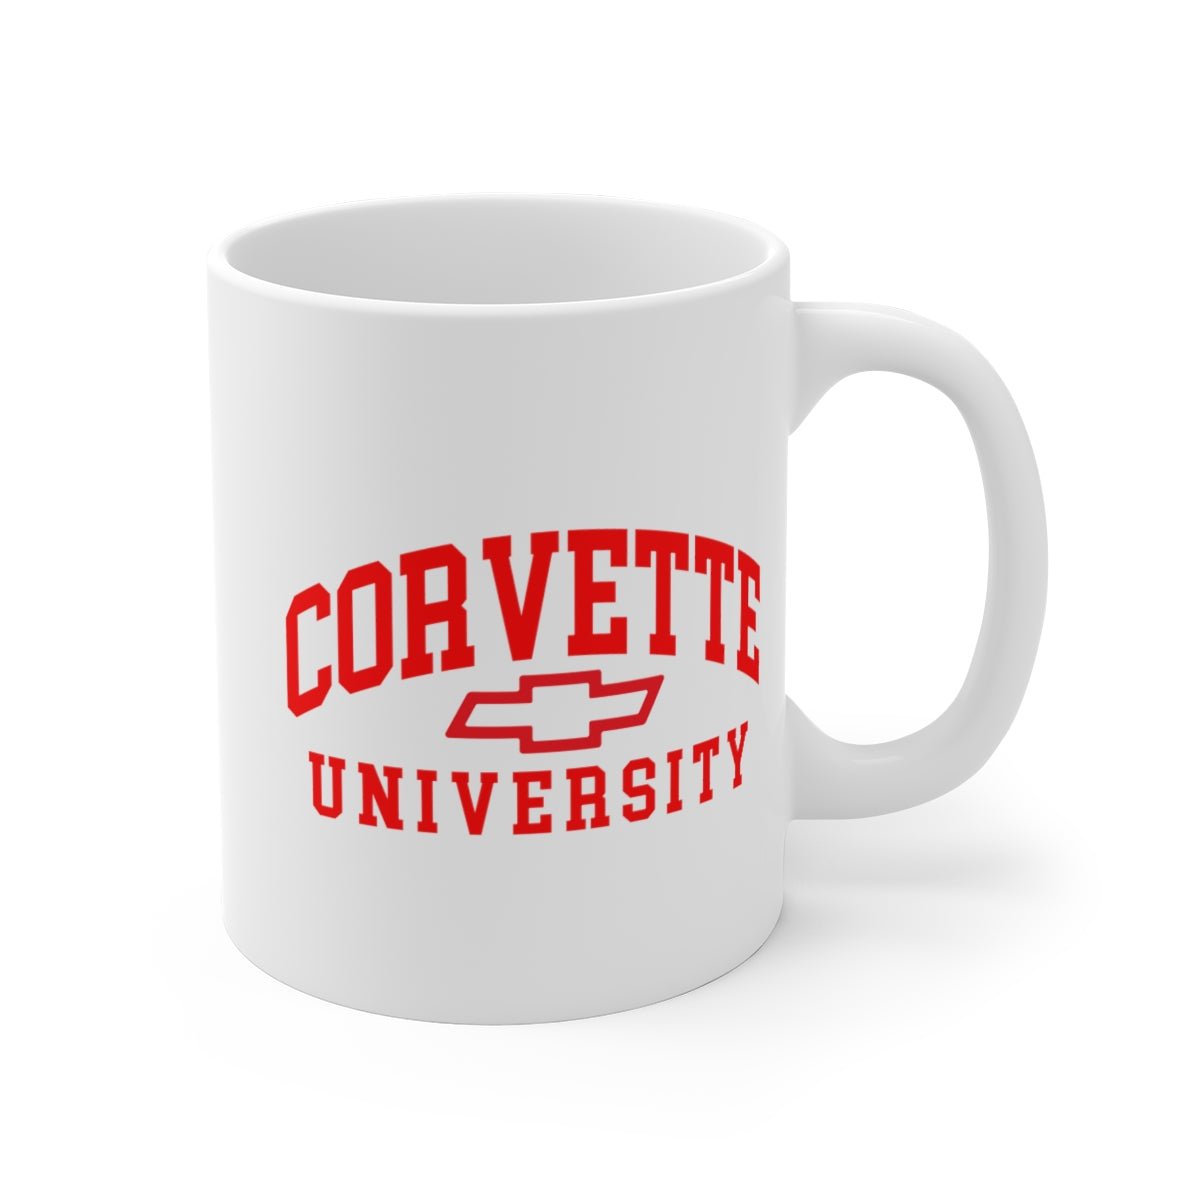 Corvette University Coffee Mug 11oz, 15oz, 20oz - Vette1 - Corvette U. Coffee Mugs